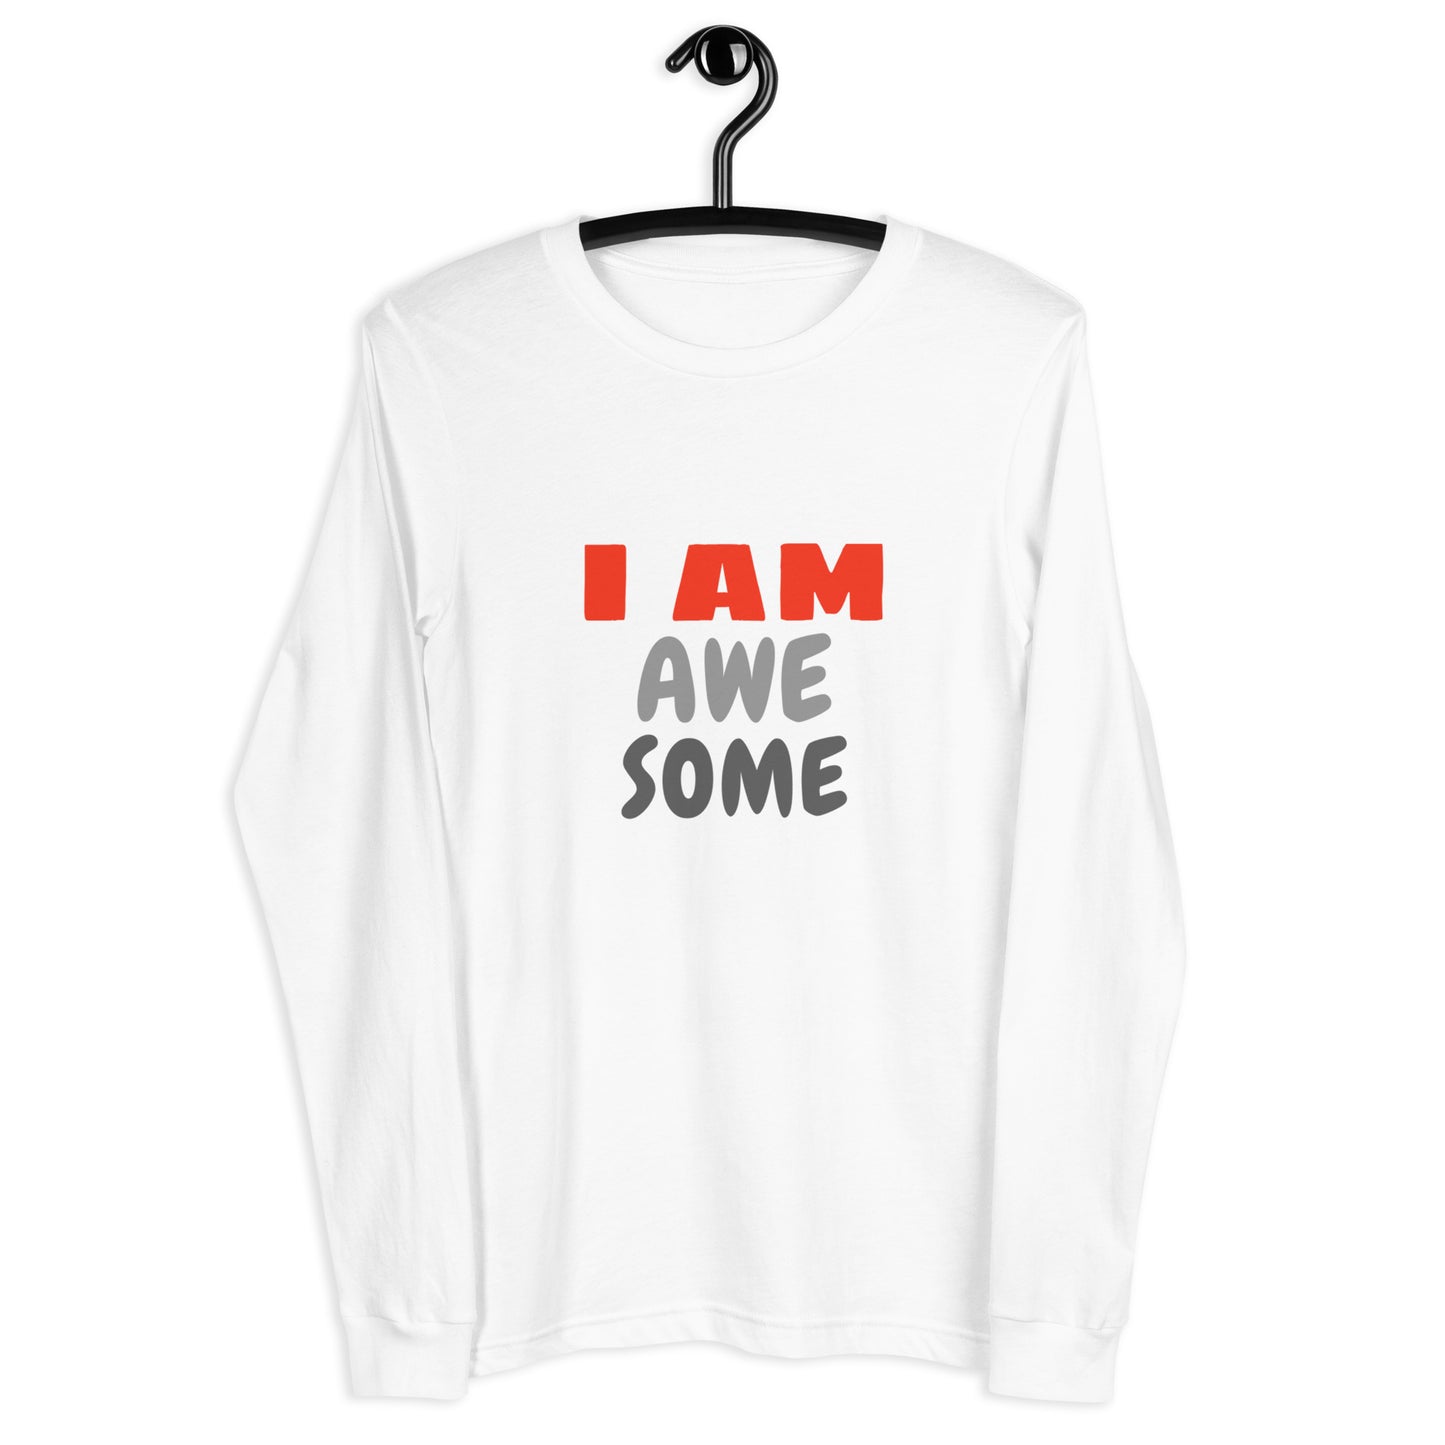 I AM AweSome Long Sleeve Unisex T-Shirt